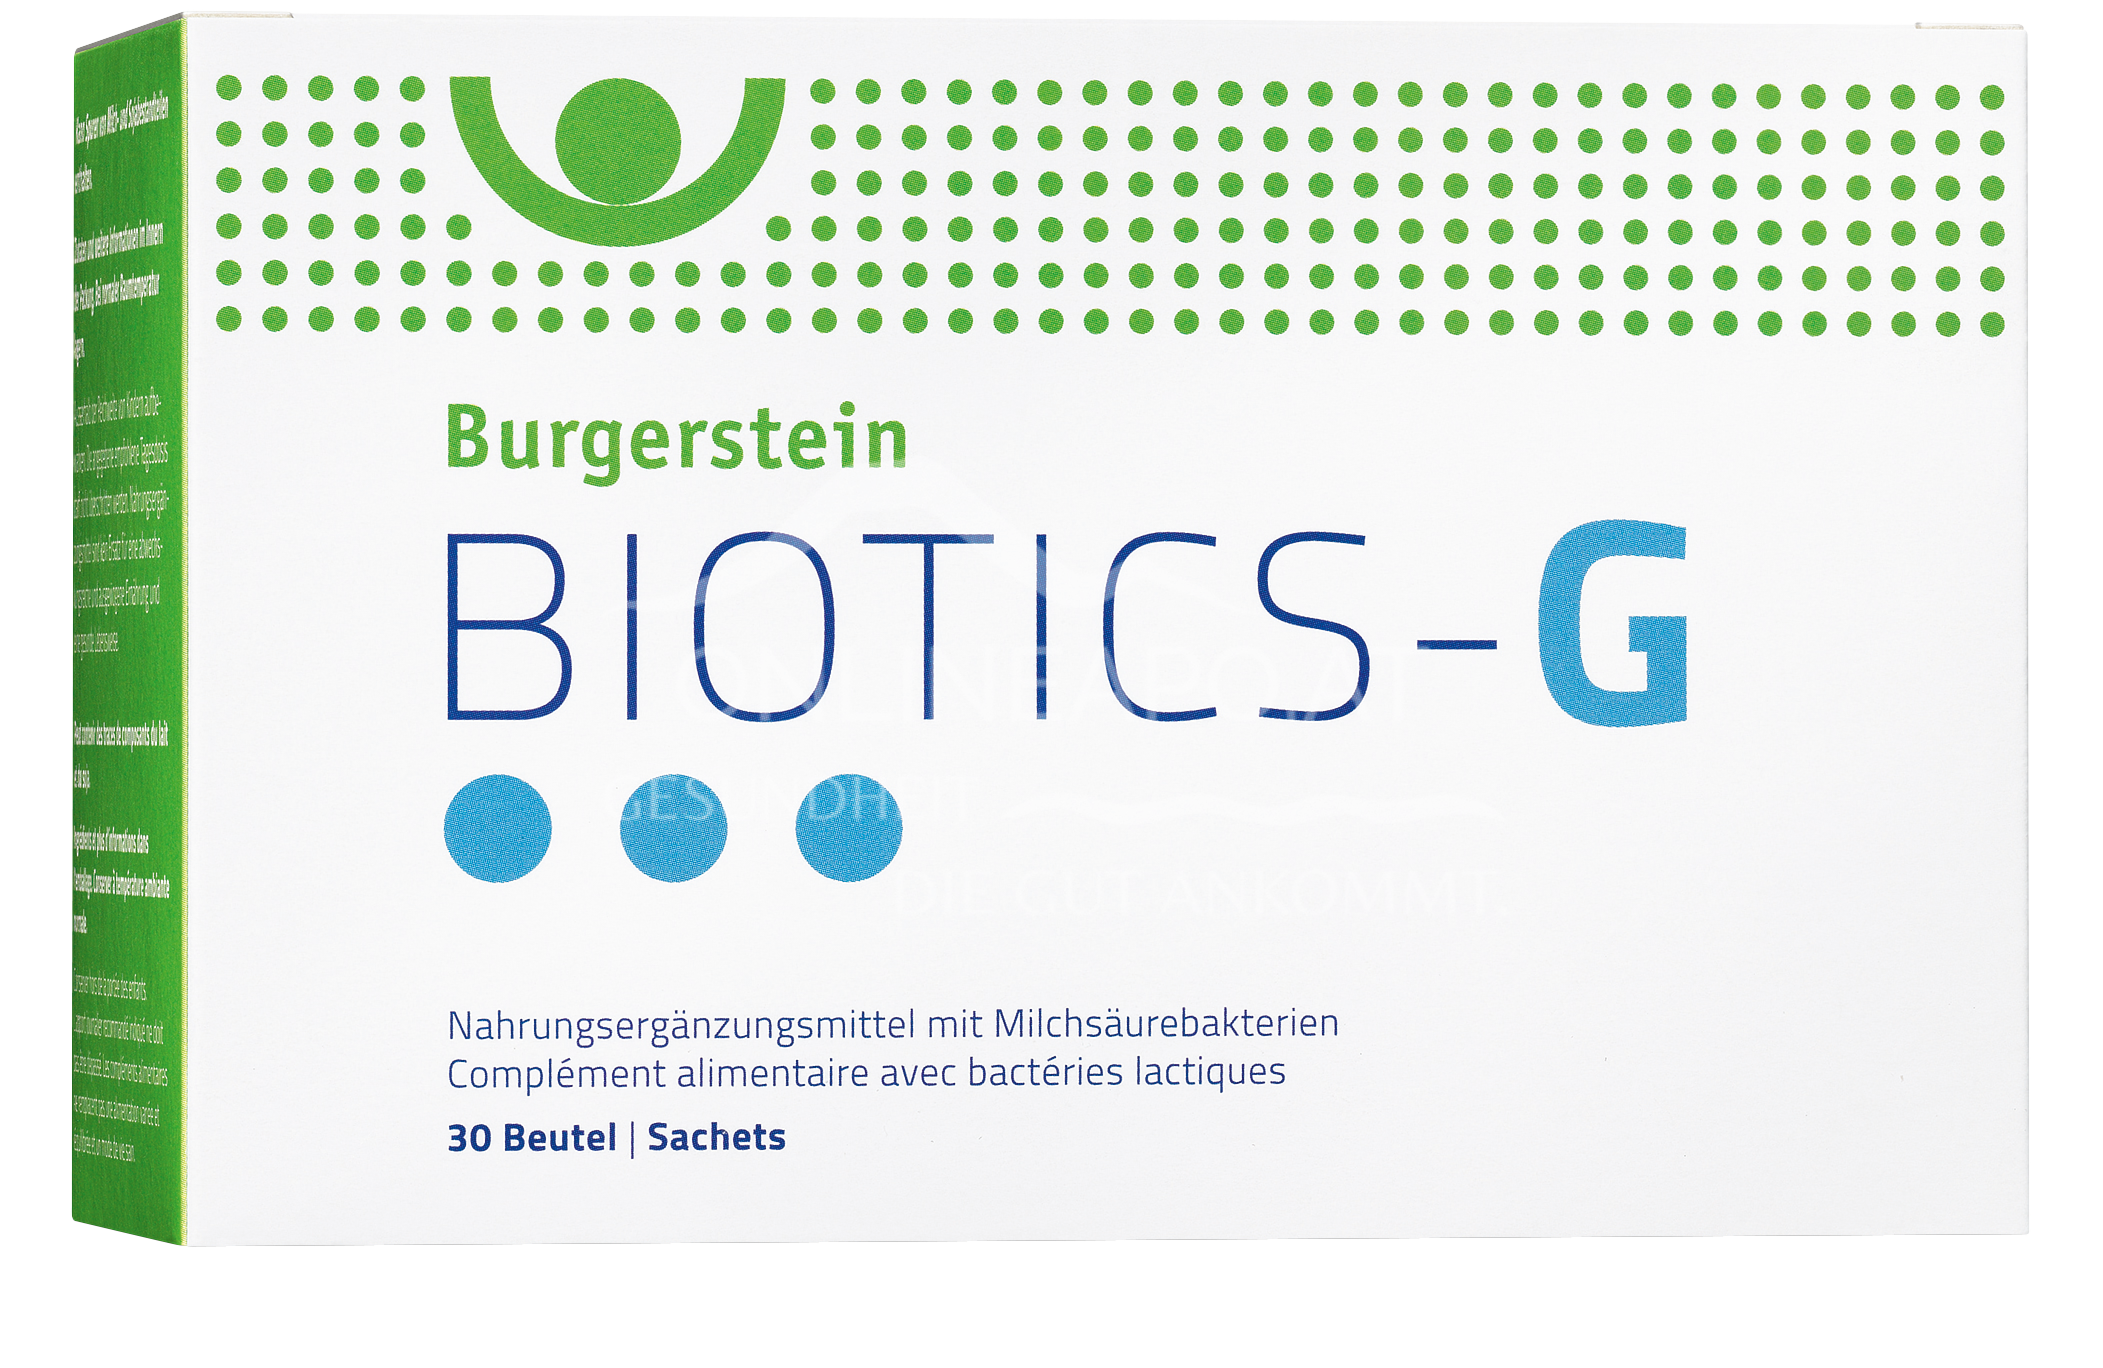 Burgerstein BIOTICS-G Sachets